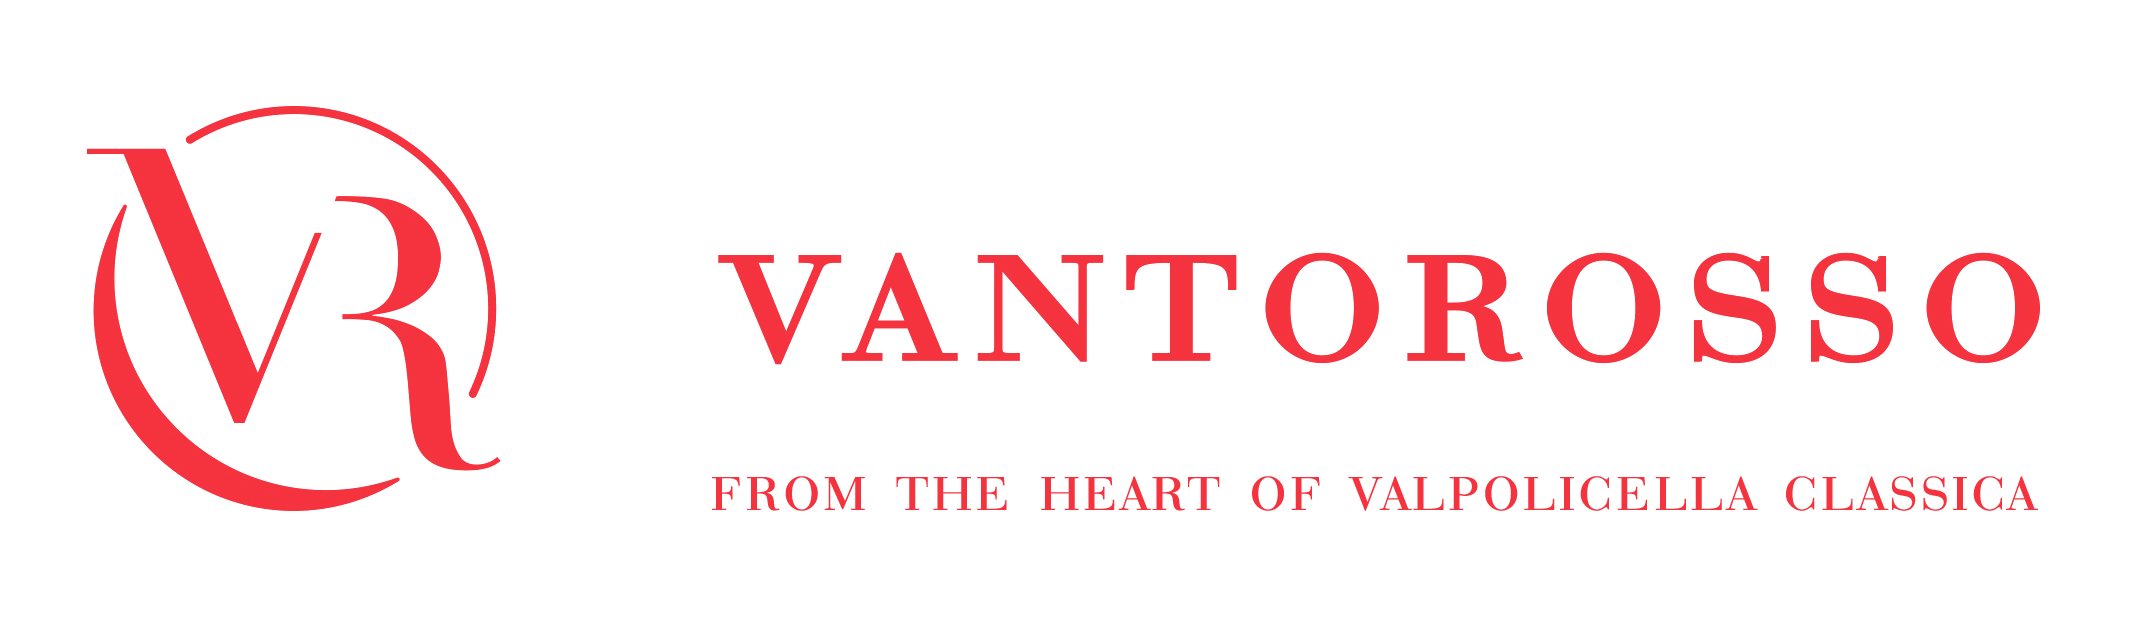 VANTOROSSO SHOP